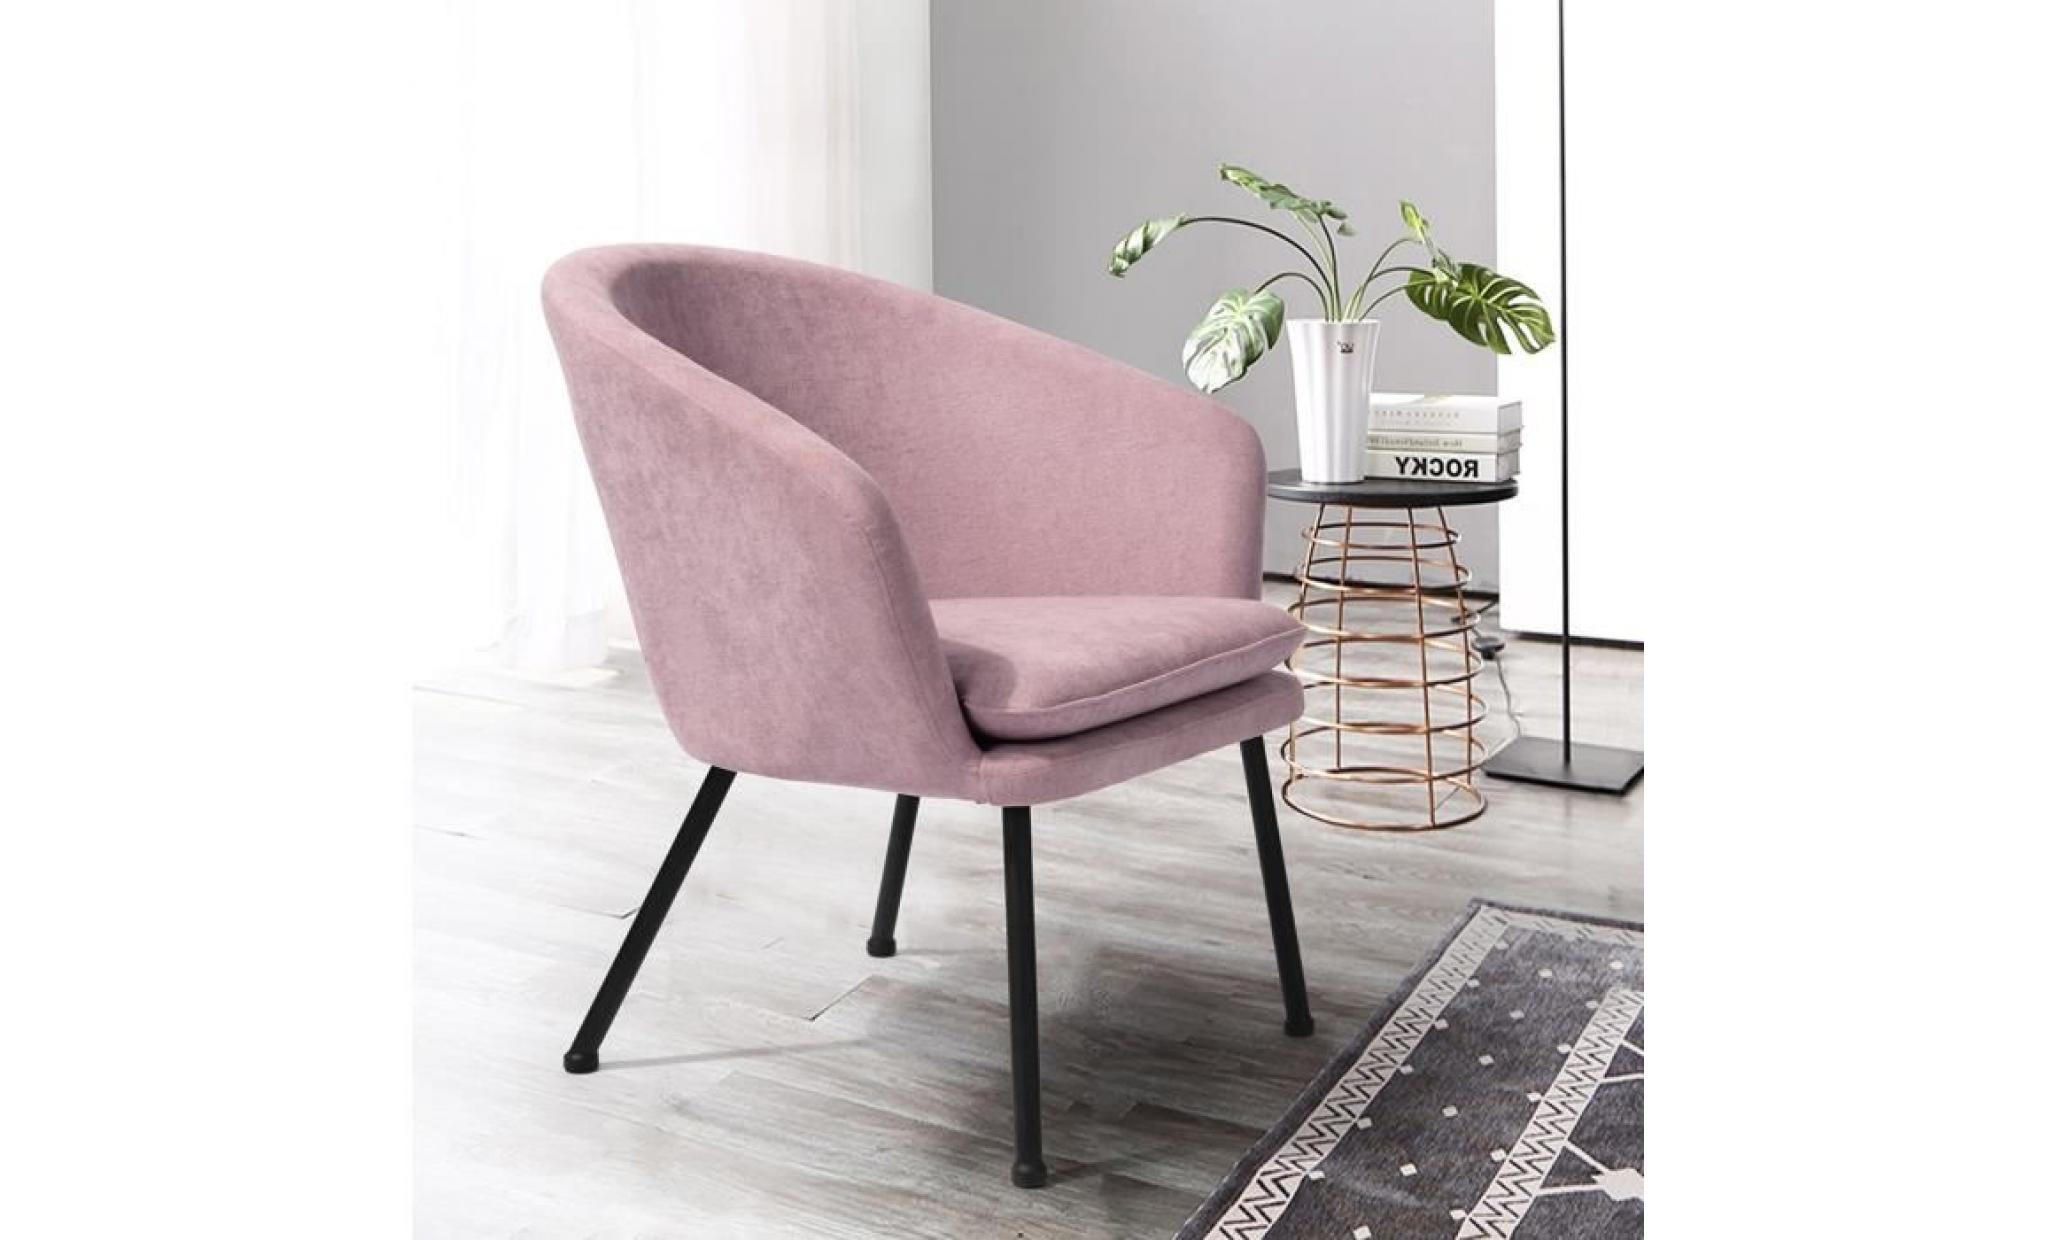 nomade fauteuil   tissu rose   contemporain   l 73 x p 55,5 cm pas cher